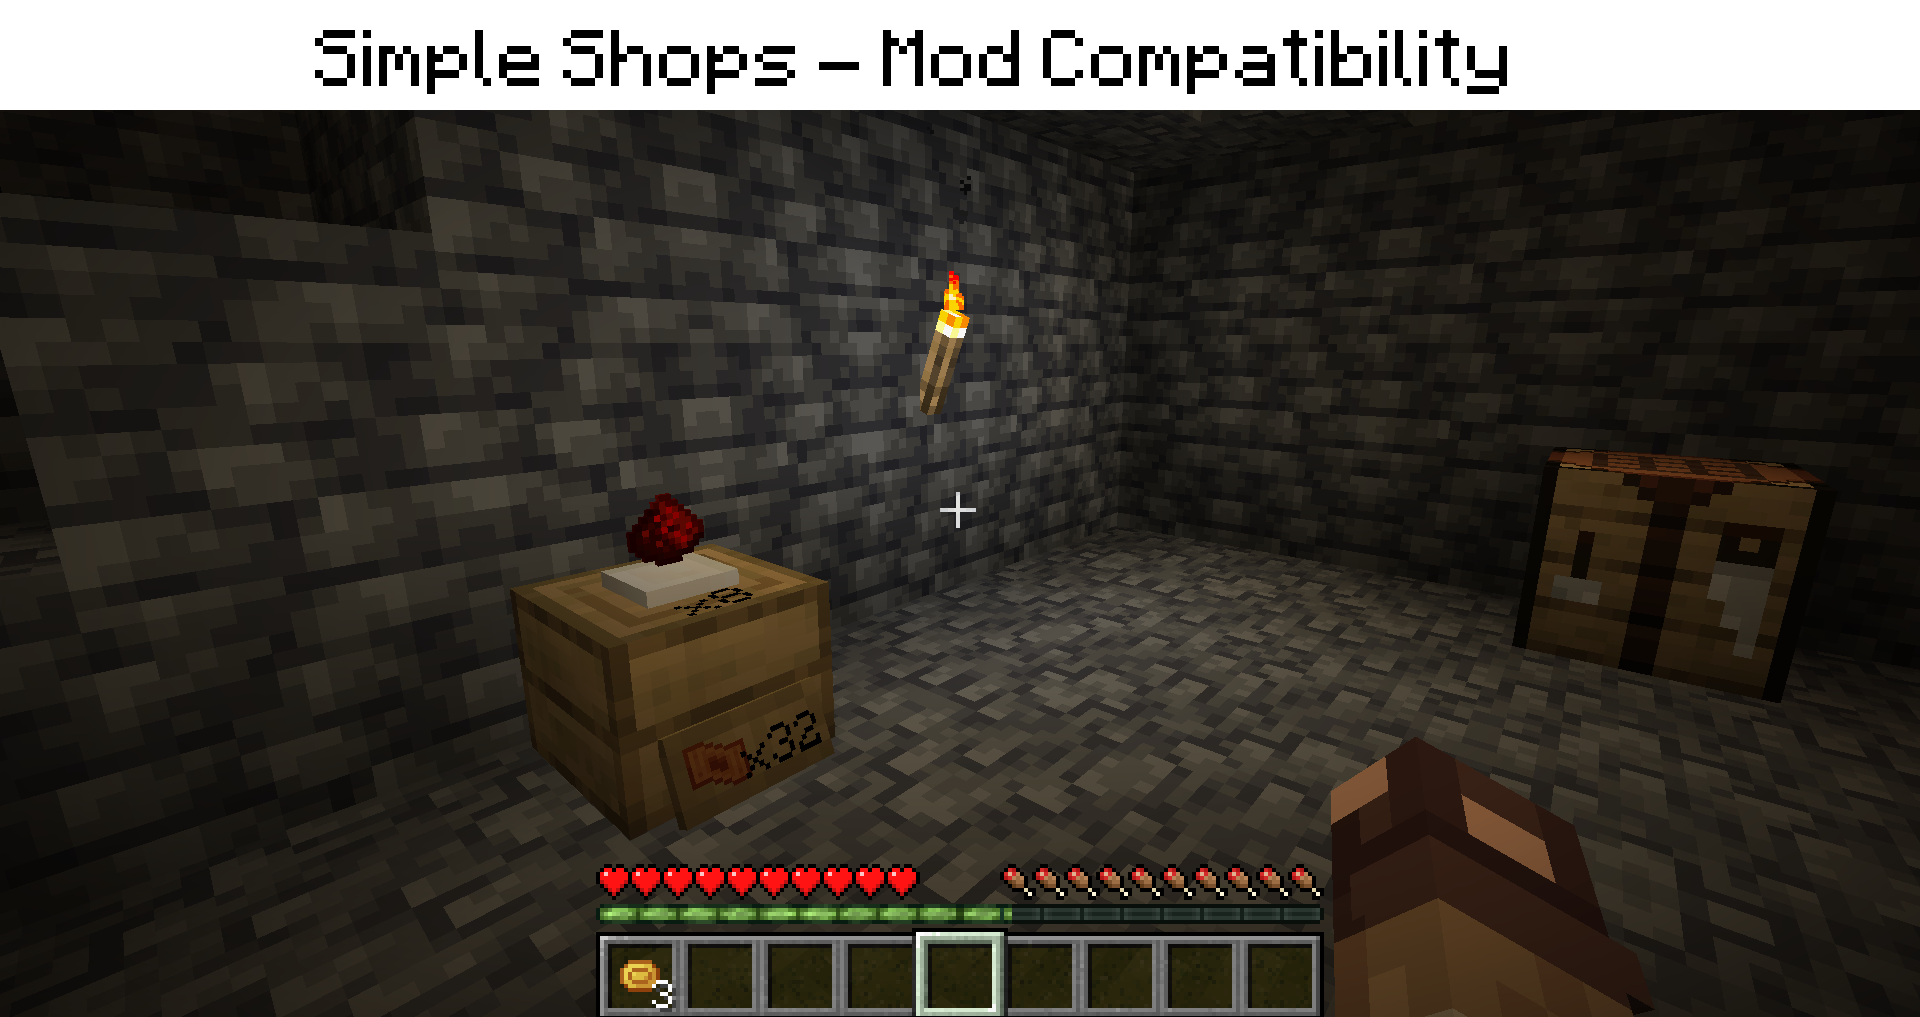 (Simple Shops - Mod Compatibility)